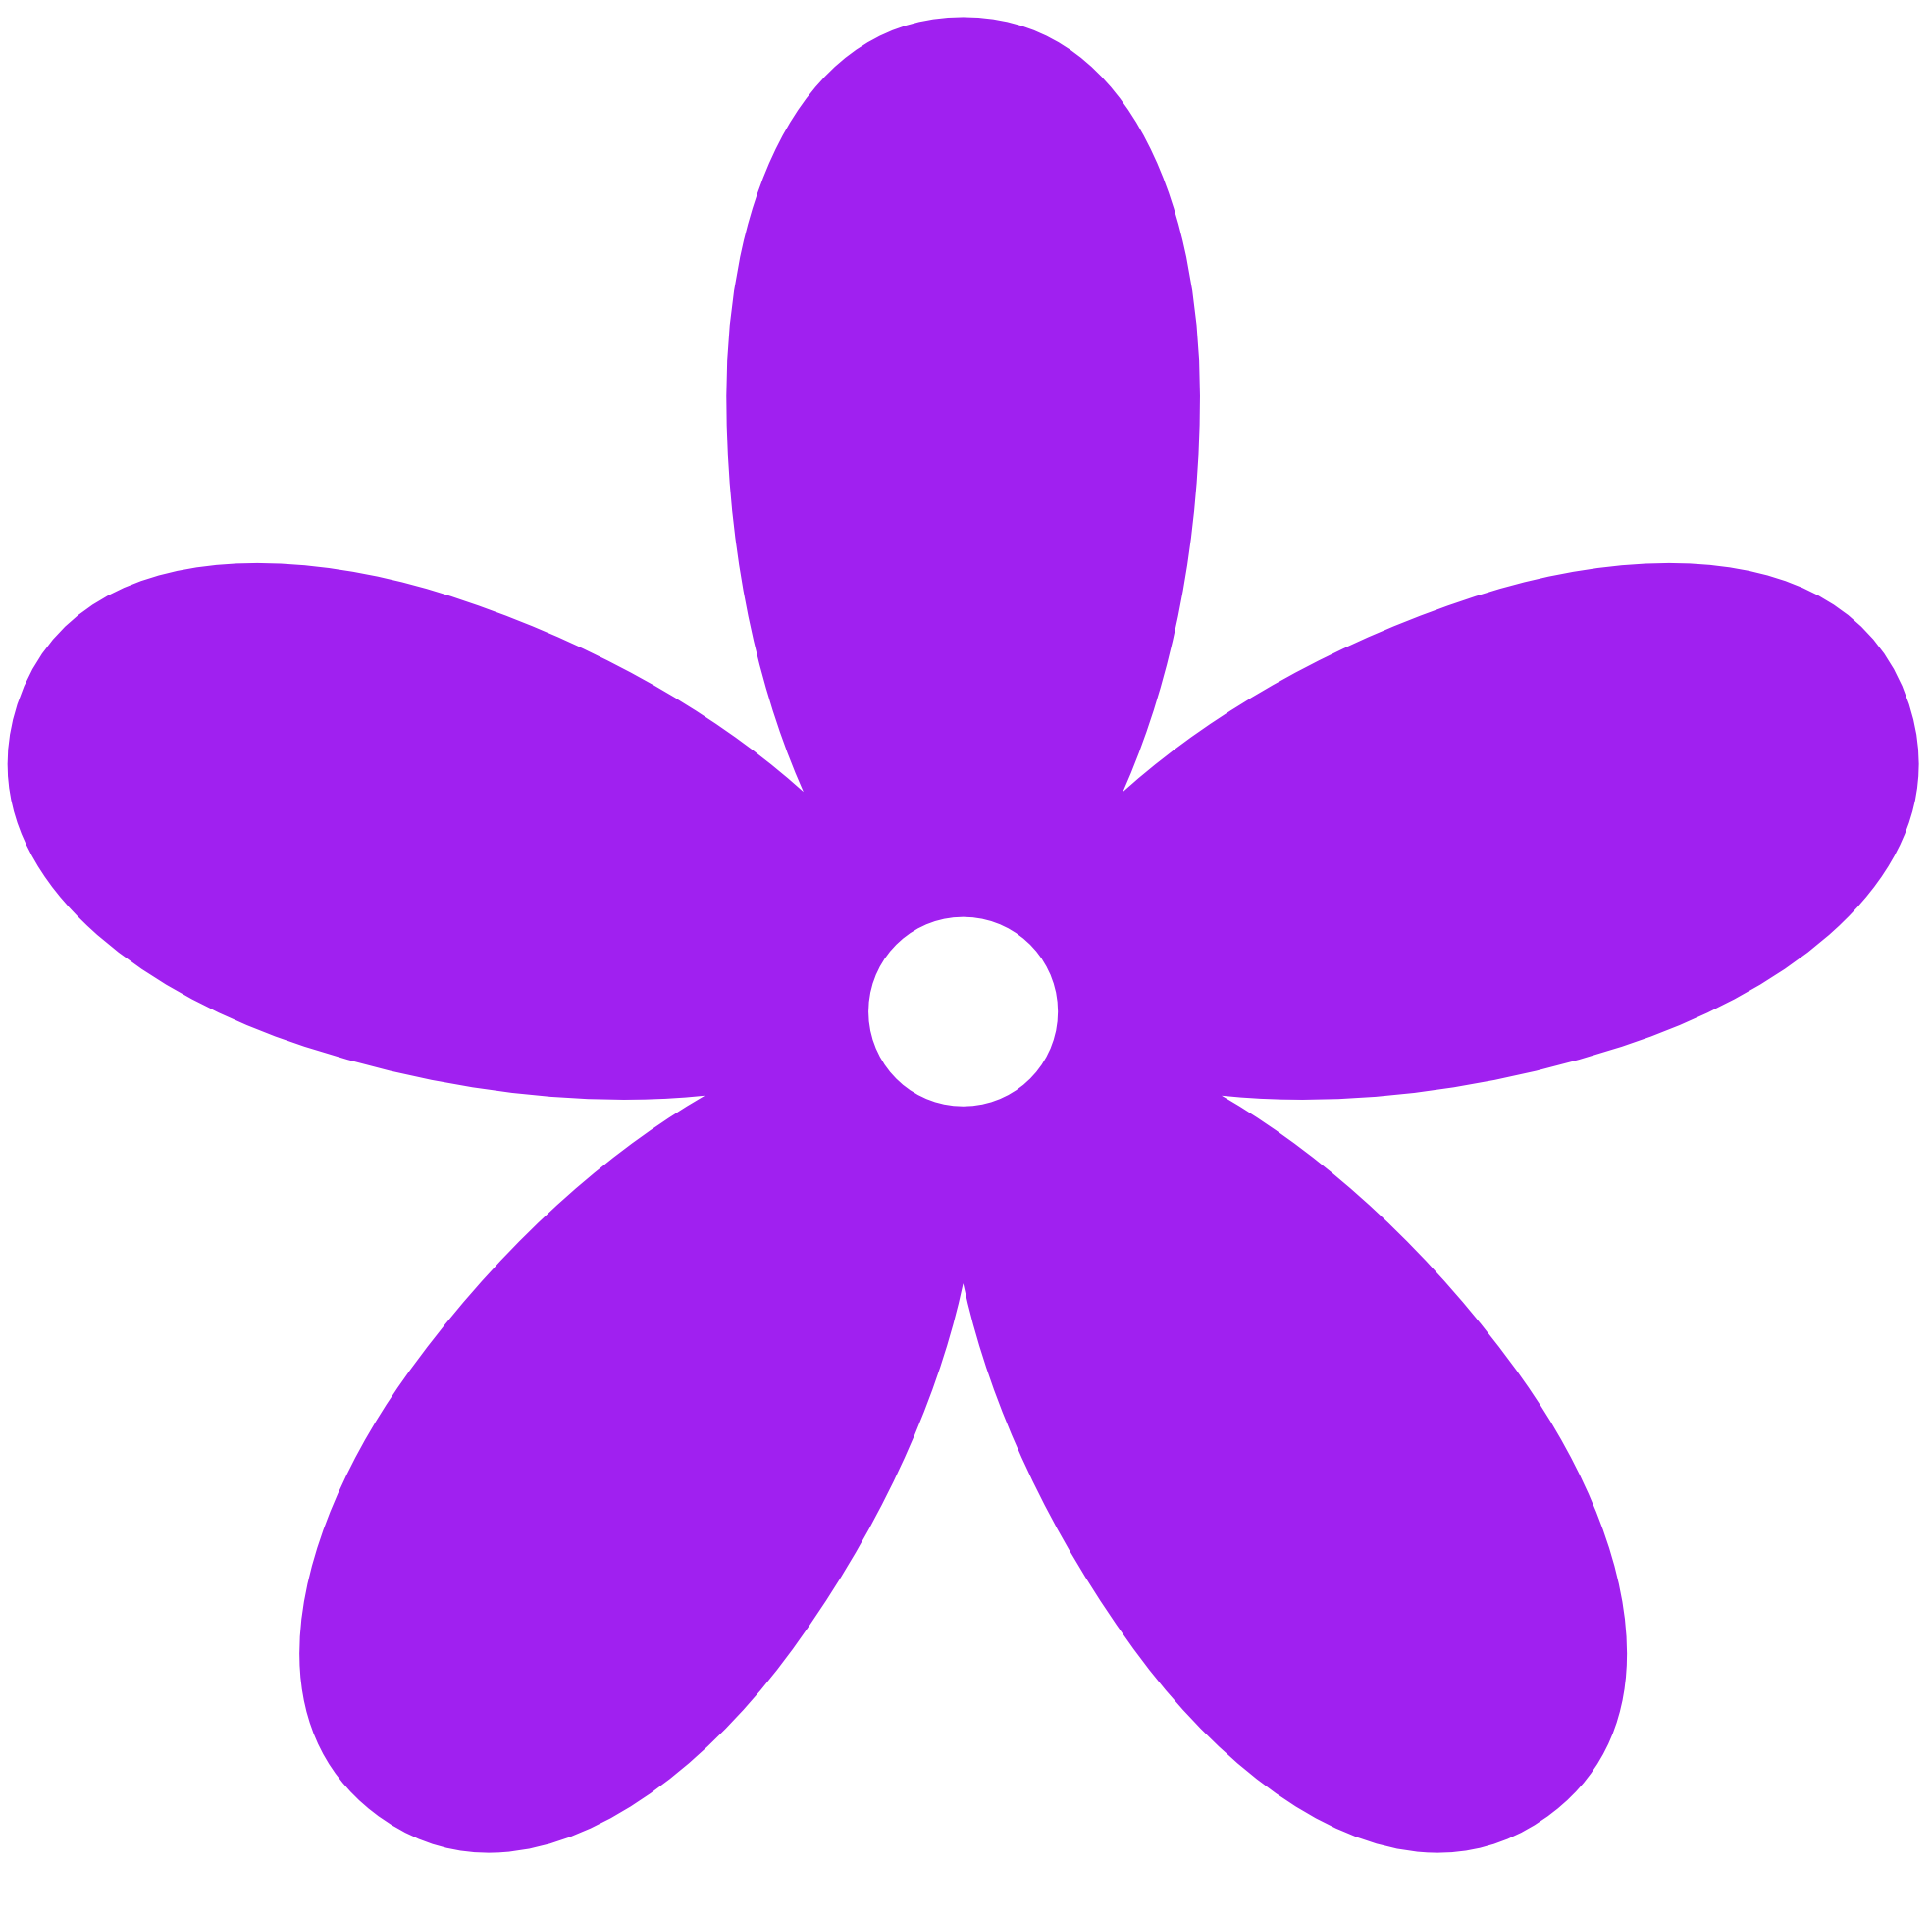 Purple Butterfly Clip Art - ClipArt Best